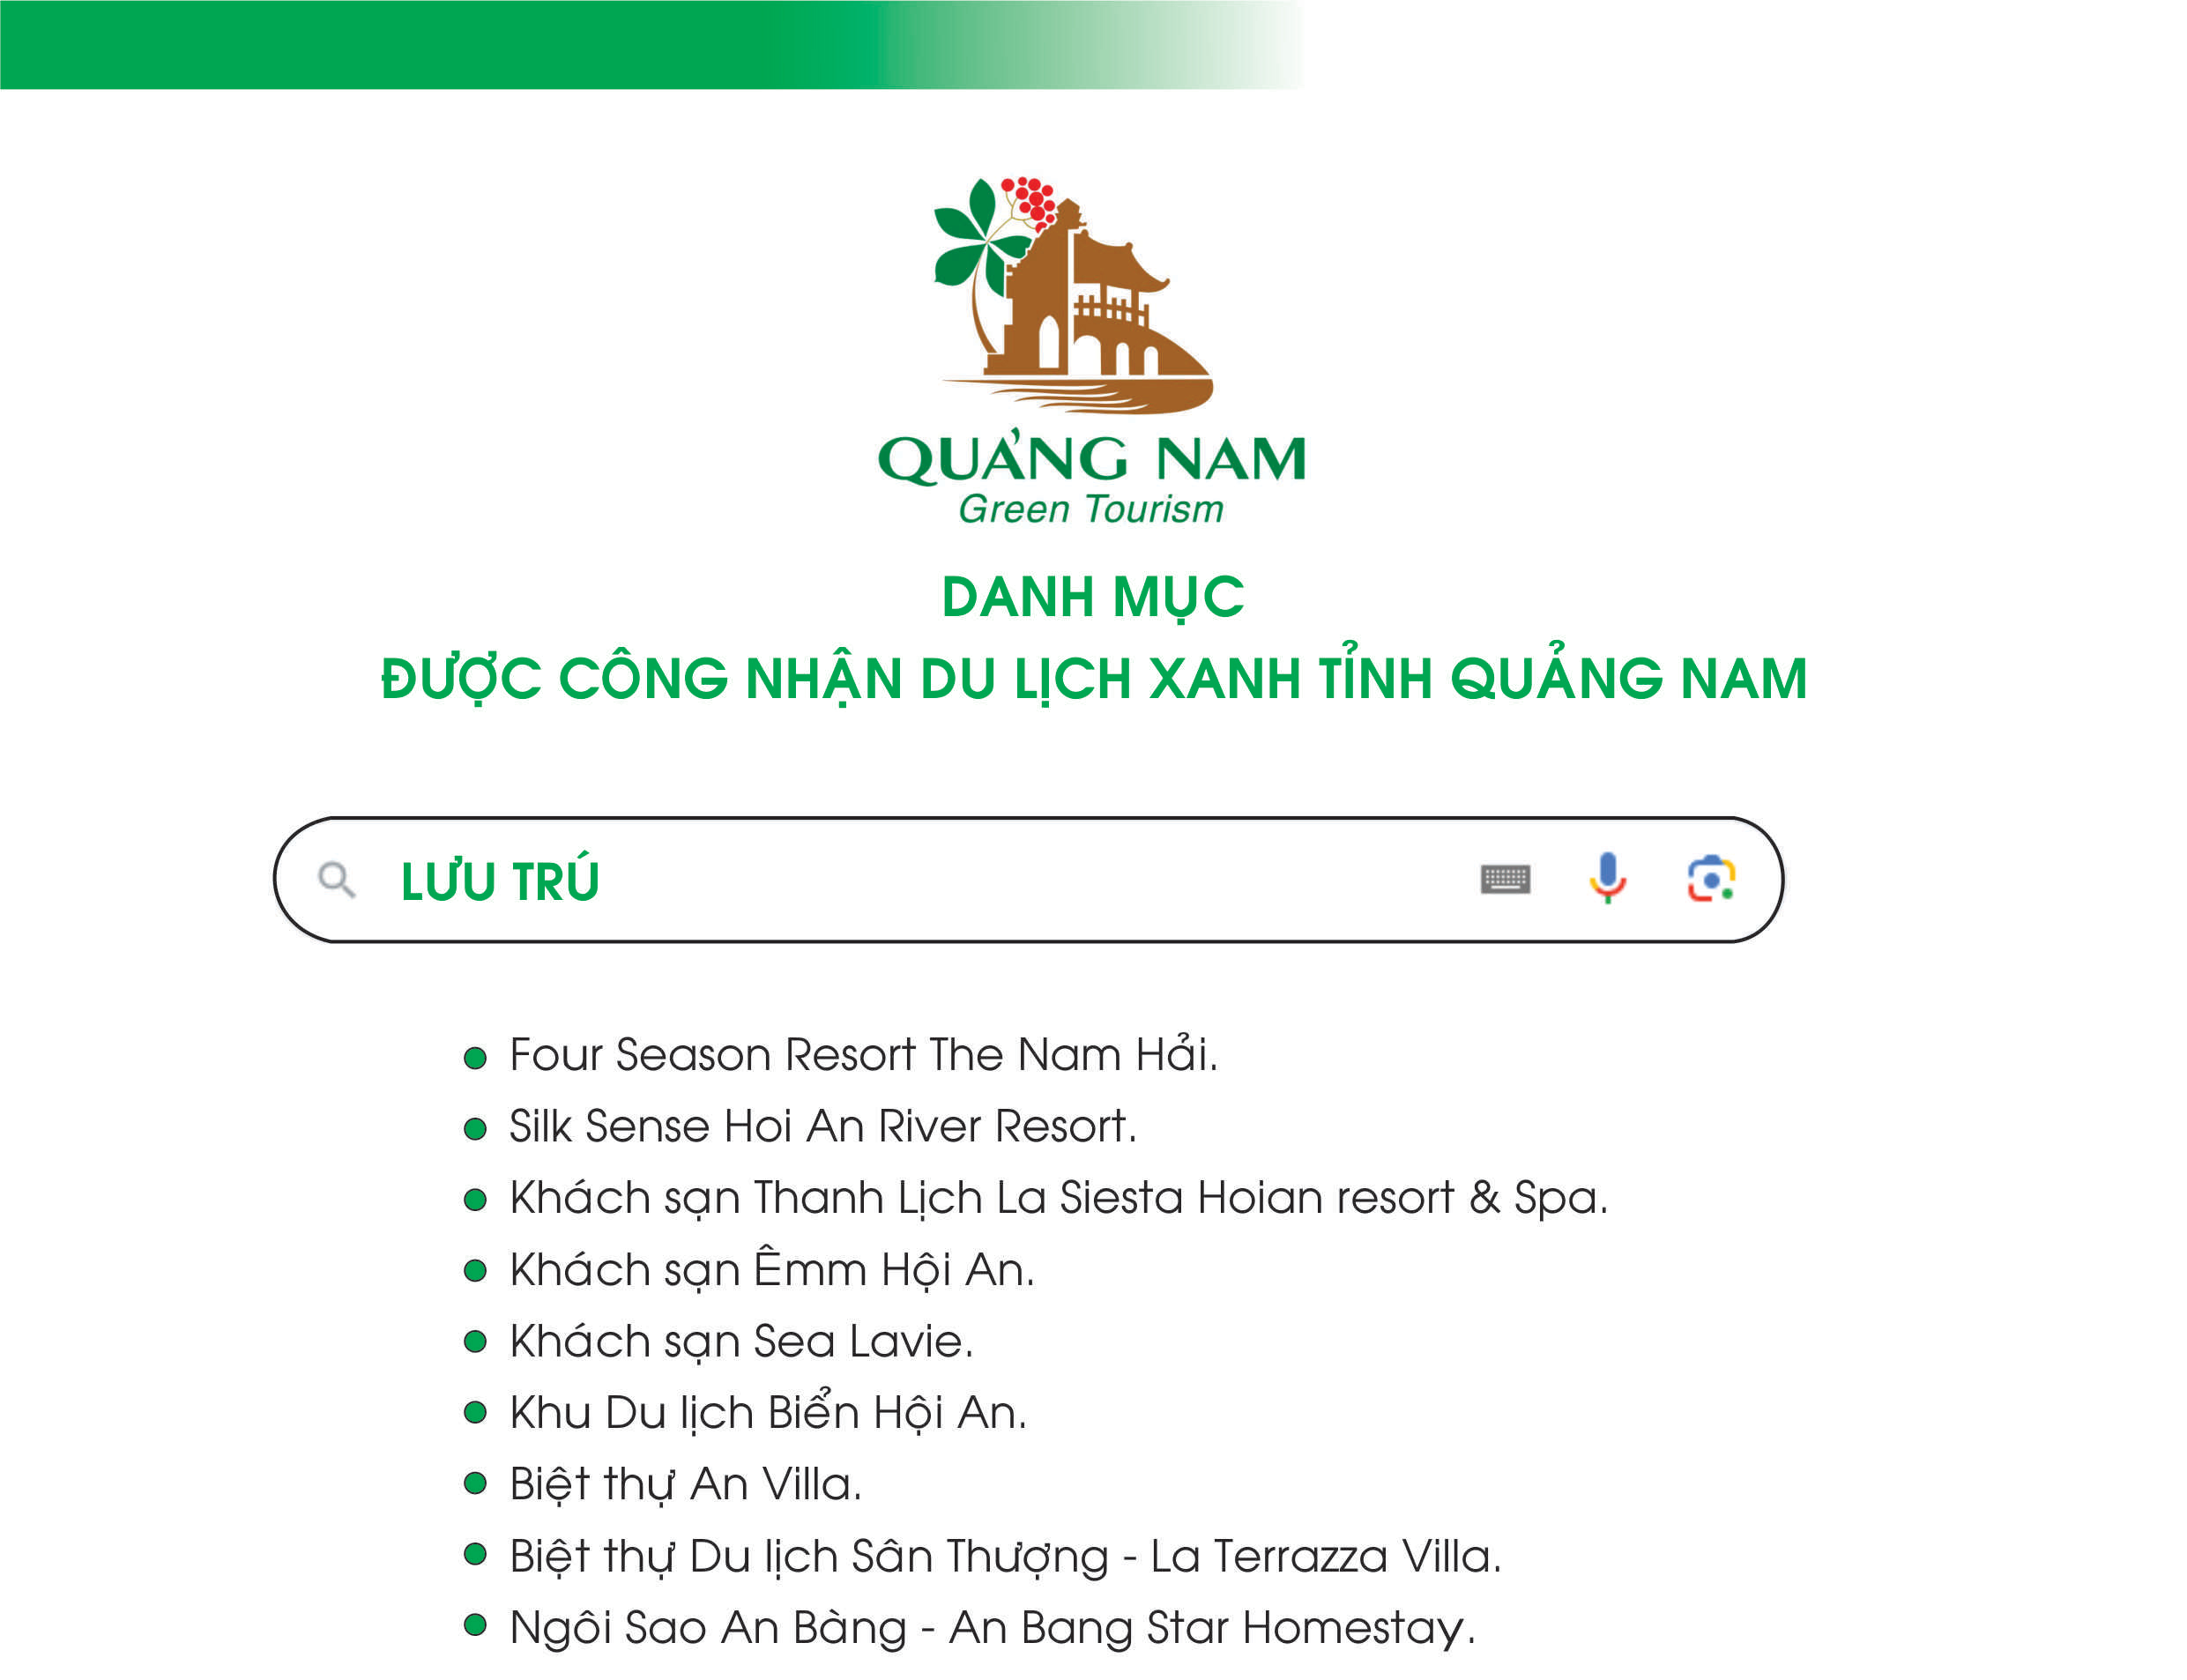 Danh mục được công nhận du lịch xanh tỉnh Quảng Nam